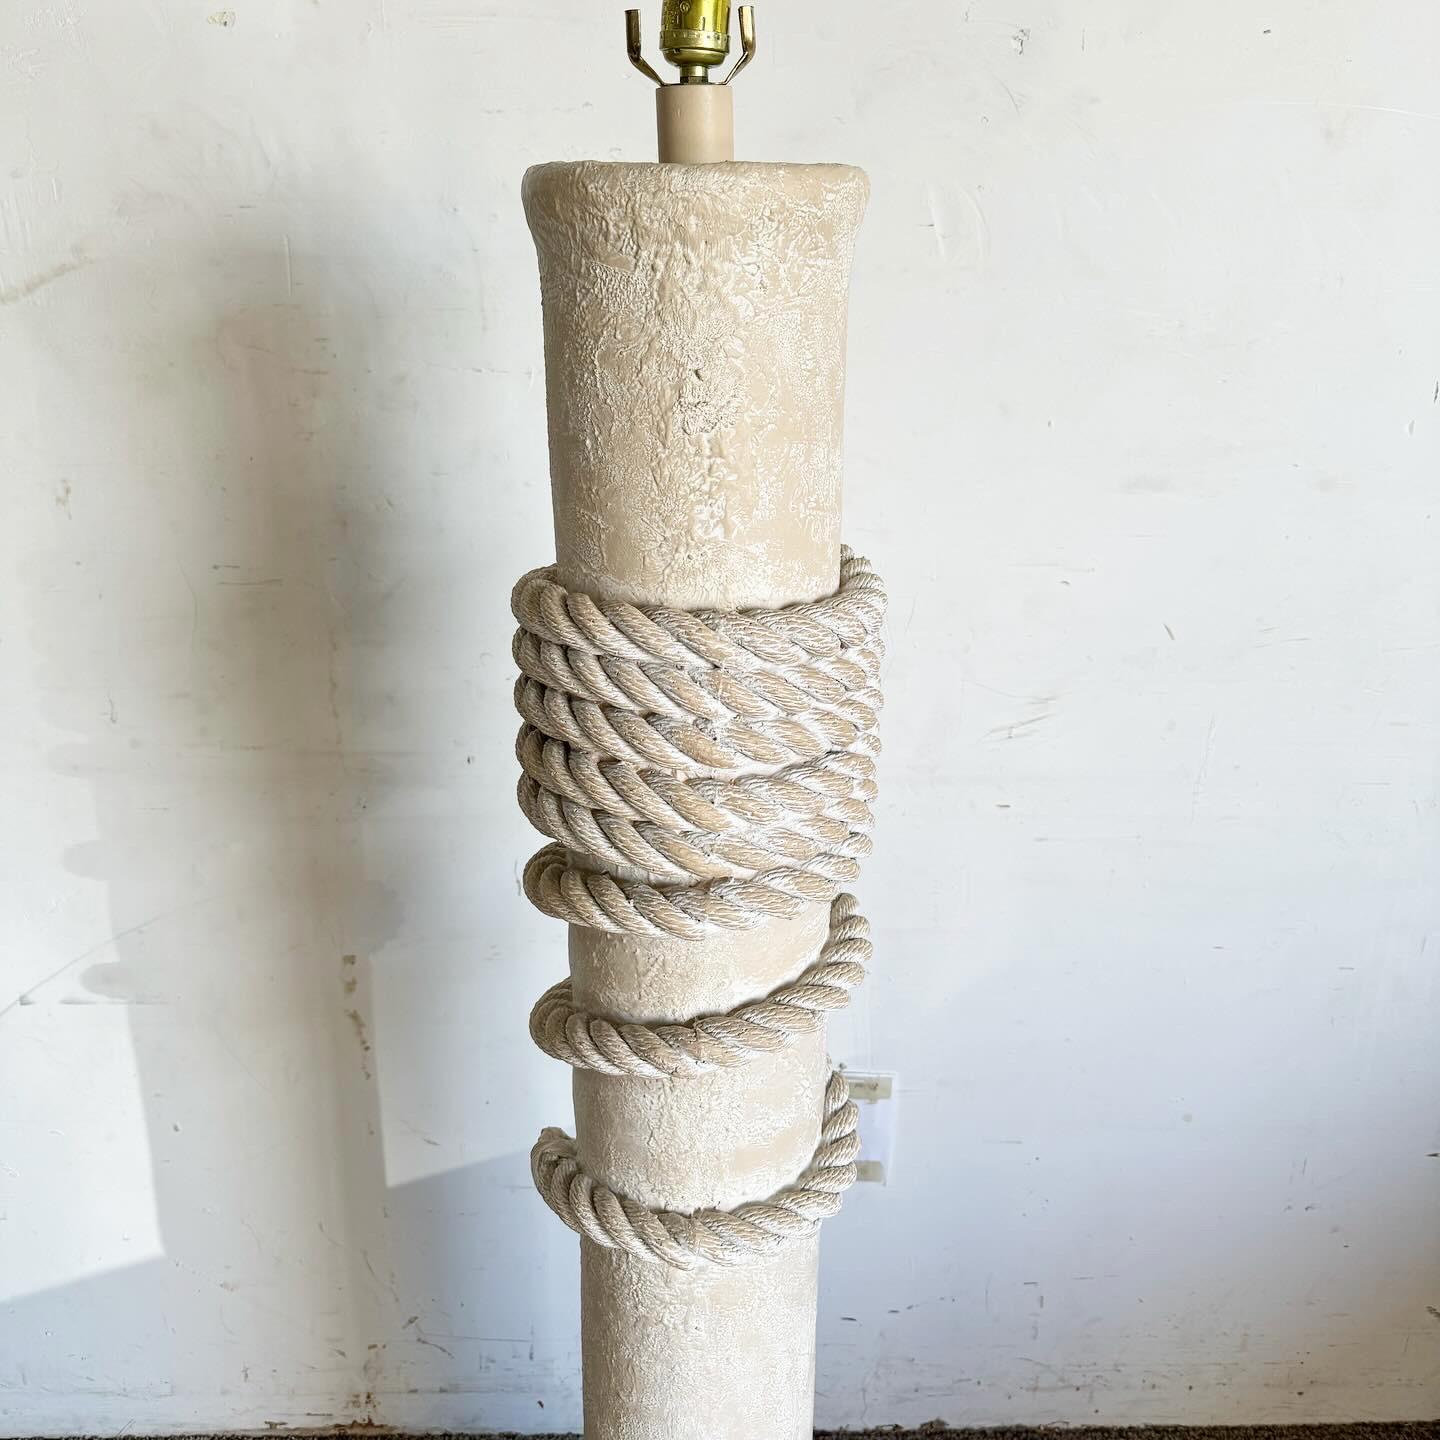 Die Postmodern Faux Roped Pillar Floor Lamp ist eine einzigartige und elegante Ergänzung für jeden Raum. Mit seiner cremefarbenen/beigefarbenen Struktur strahlt er moderne Raffinesse aus. Der Clou ist das eingearbeitete Seilimitat, das für